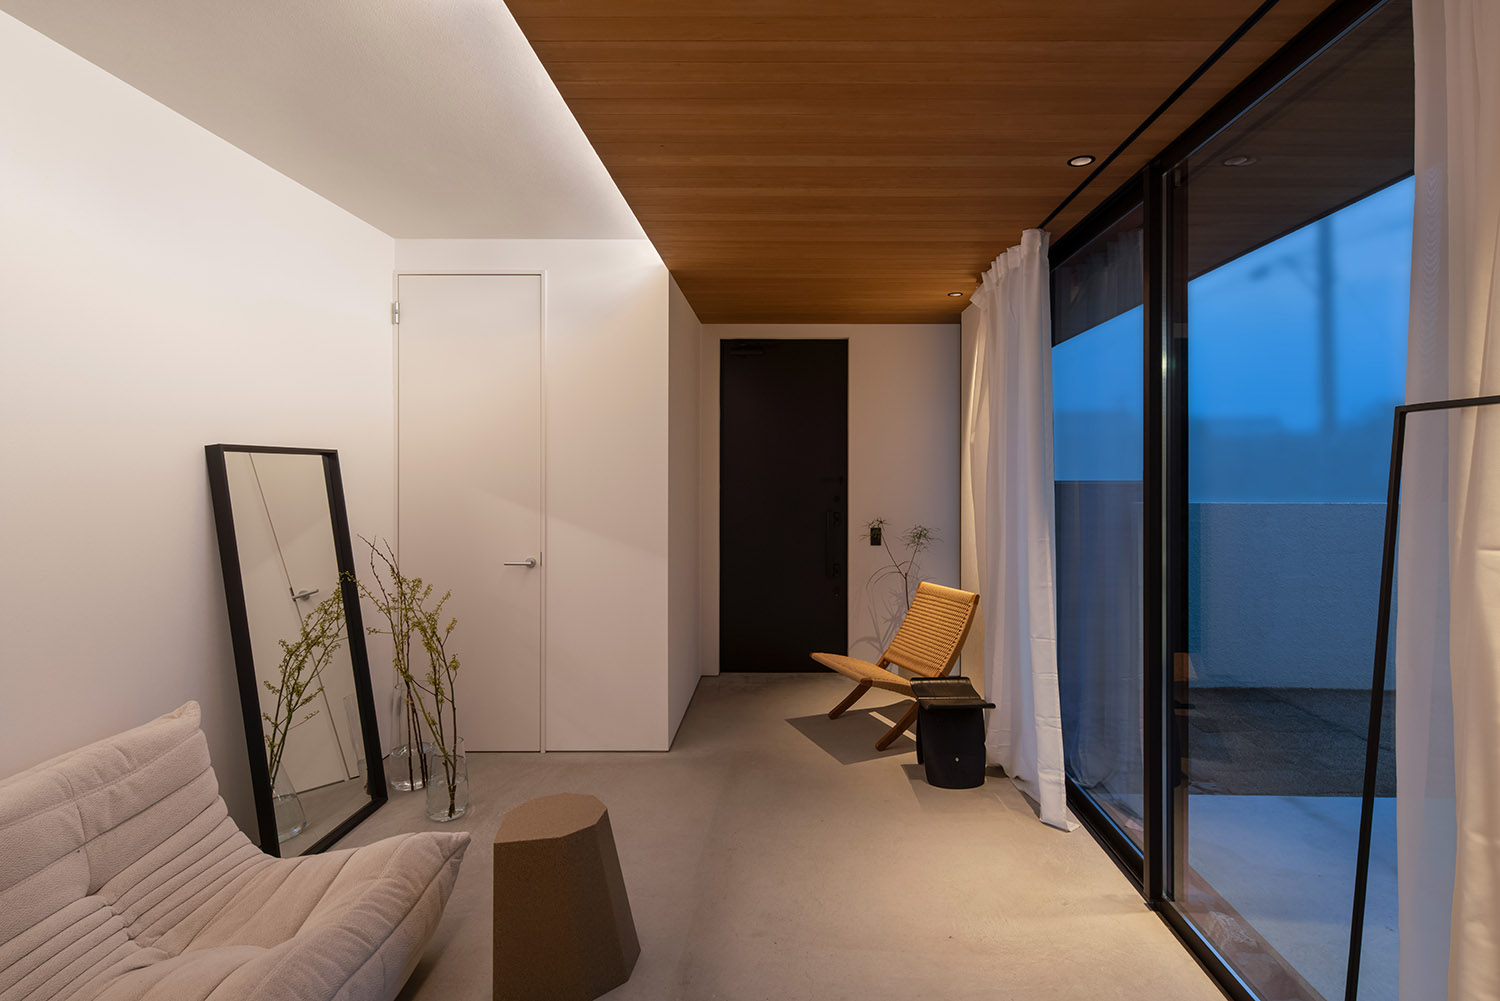 木目の天井に間接照明を取り付けたシンプルで広々とした土間玄関・デザイン住宅